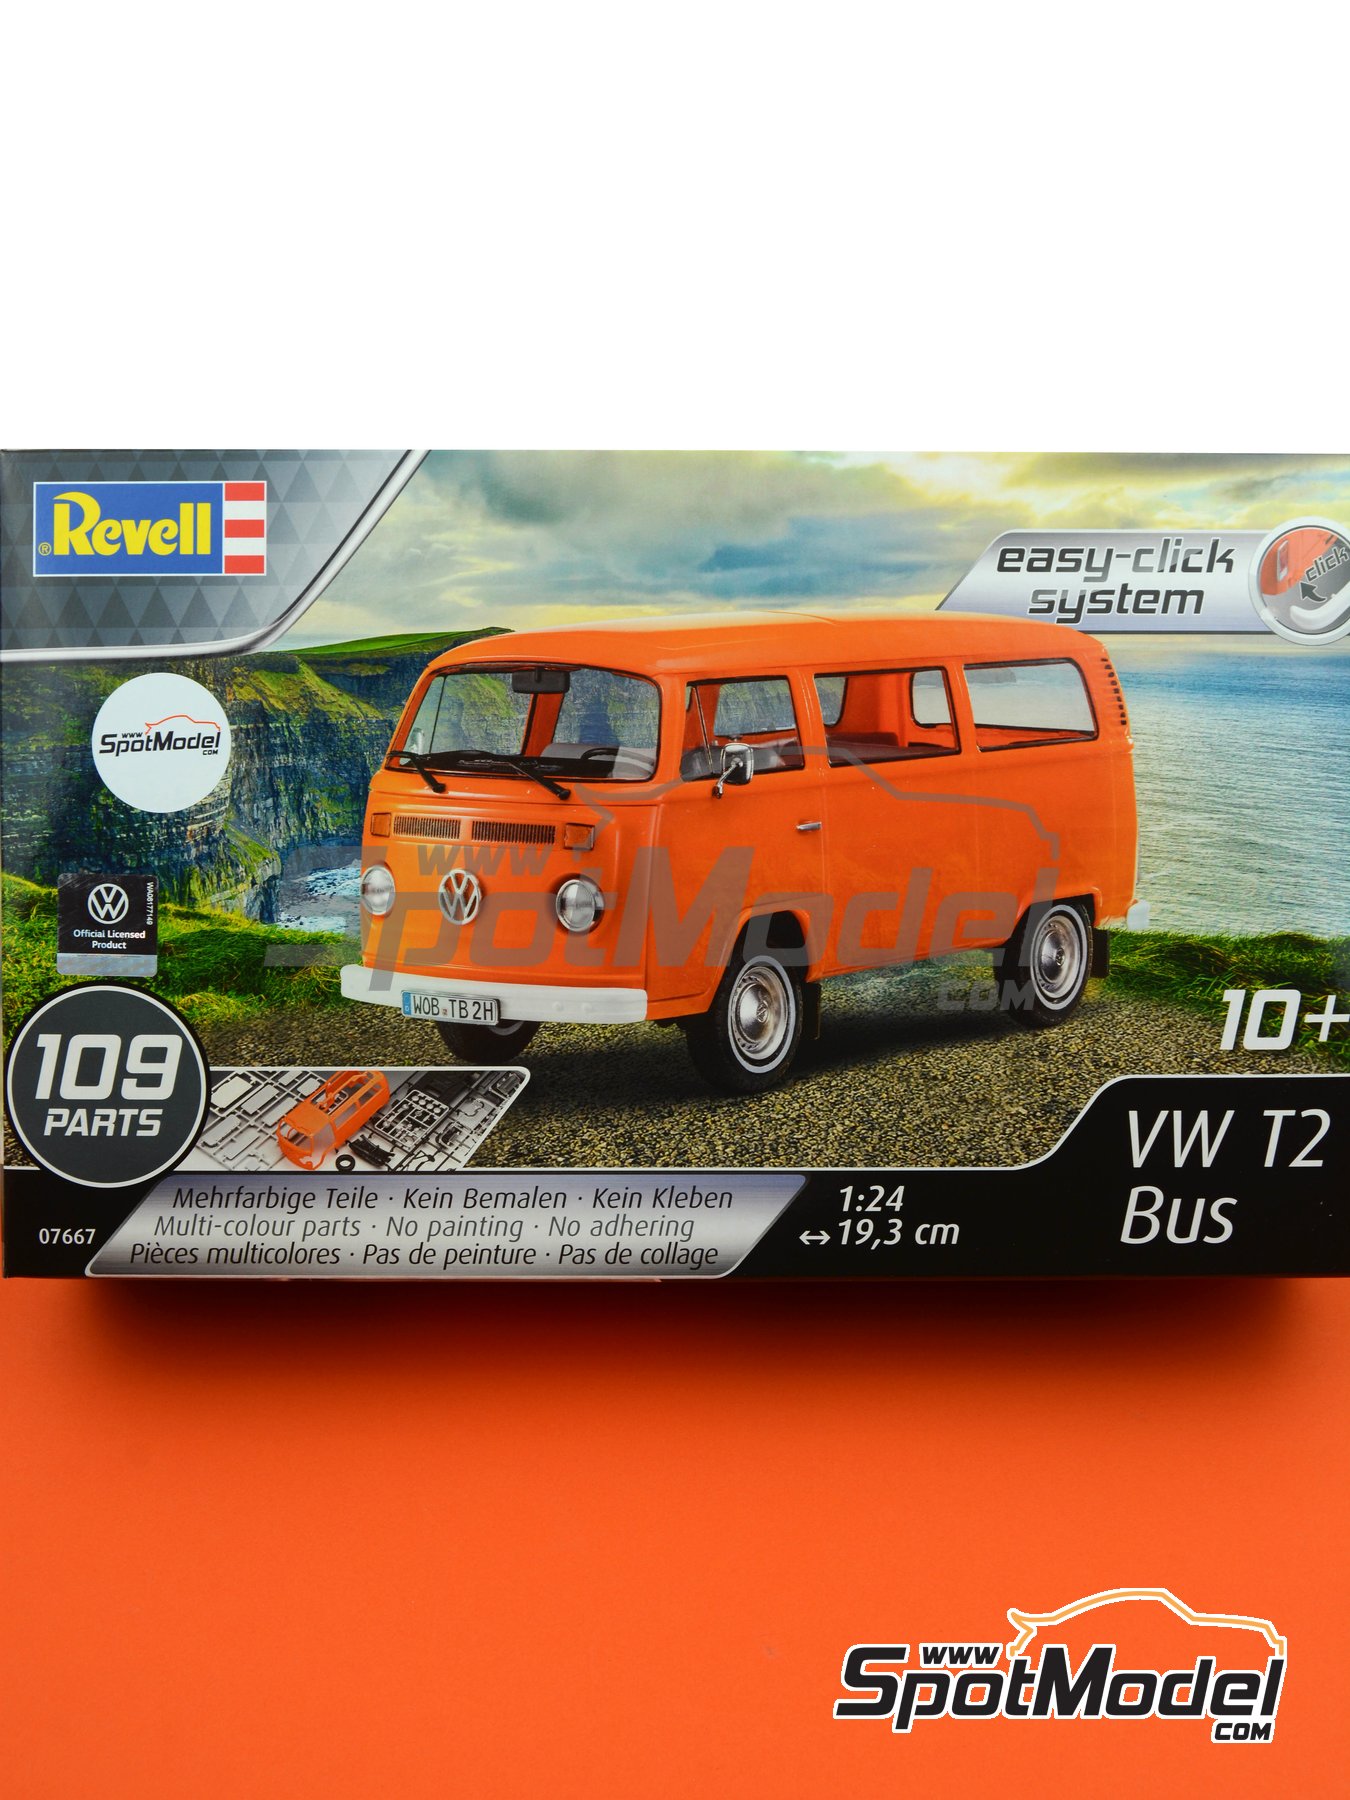 Revell: Model van 1/24 scale Volkswagen Transporter T2 (ref. REV07667) | SpotModel